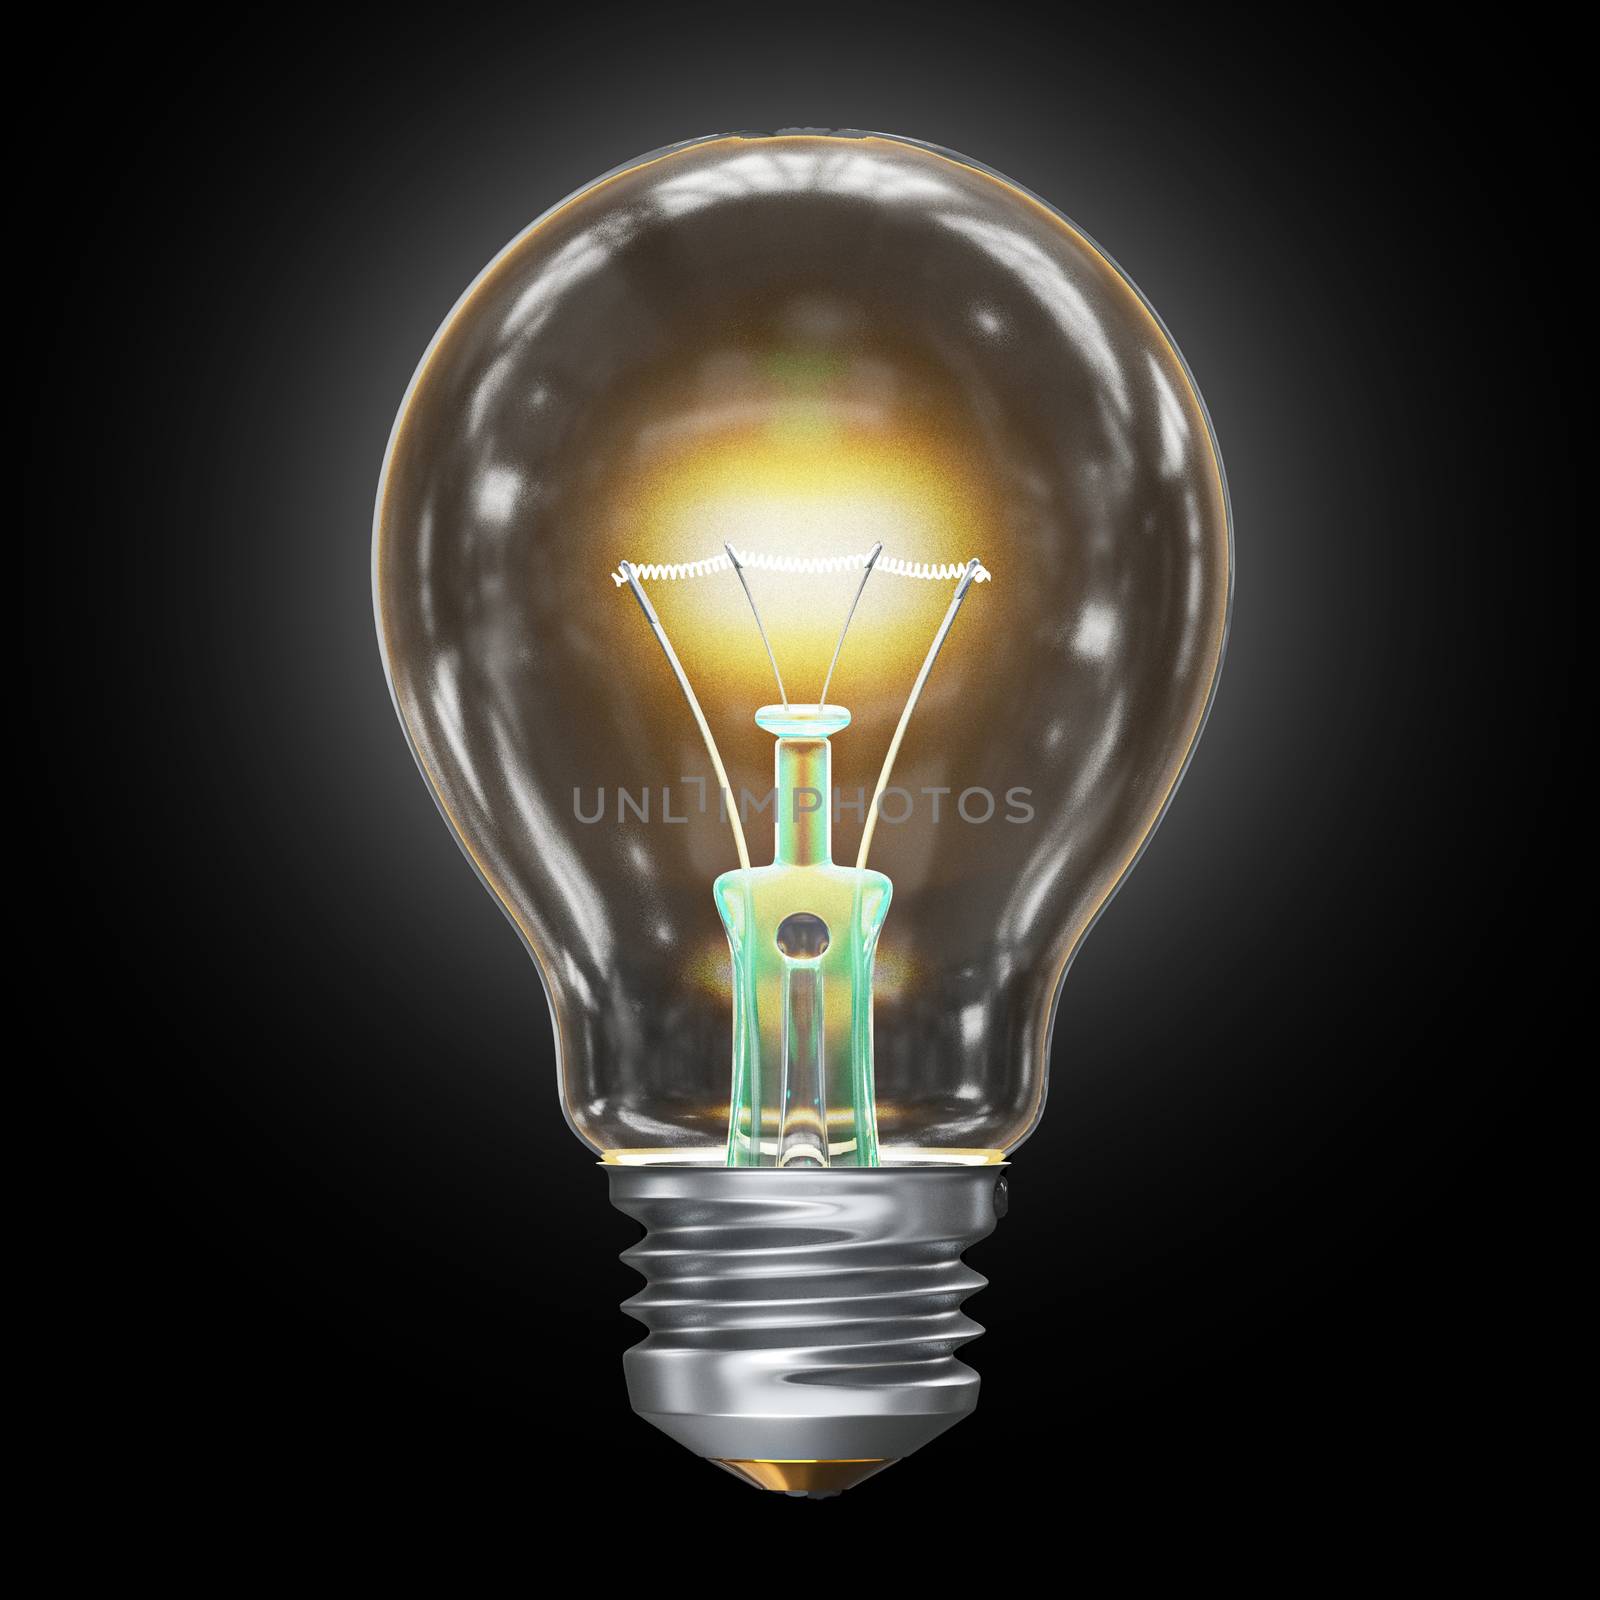 Light bulb 3D render illustration isolated on black background